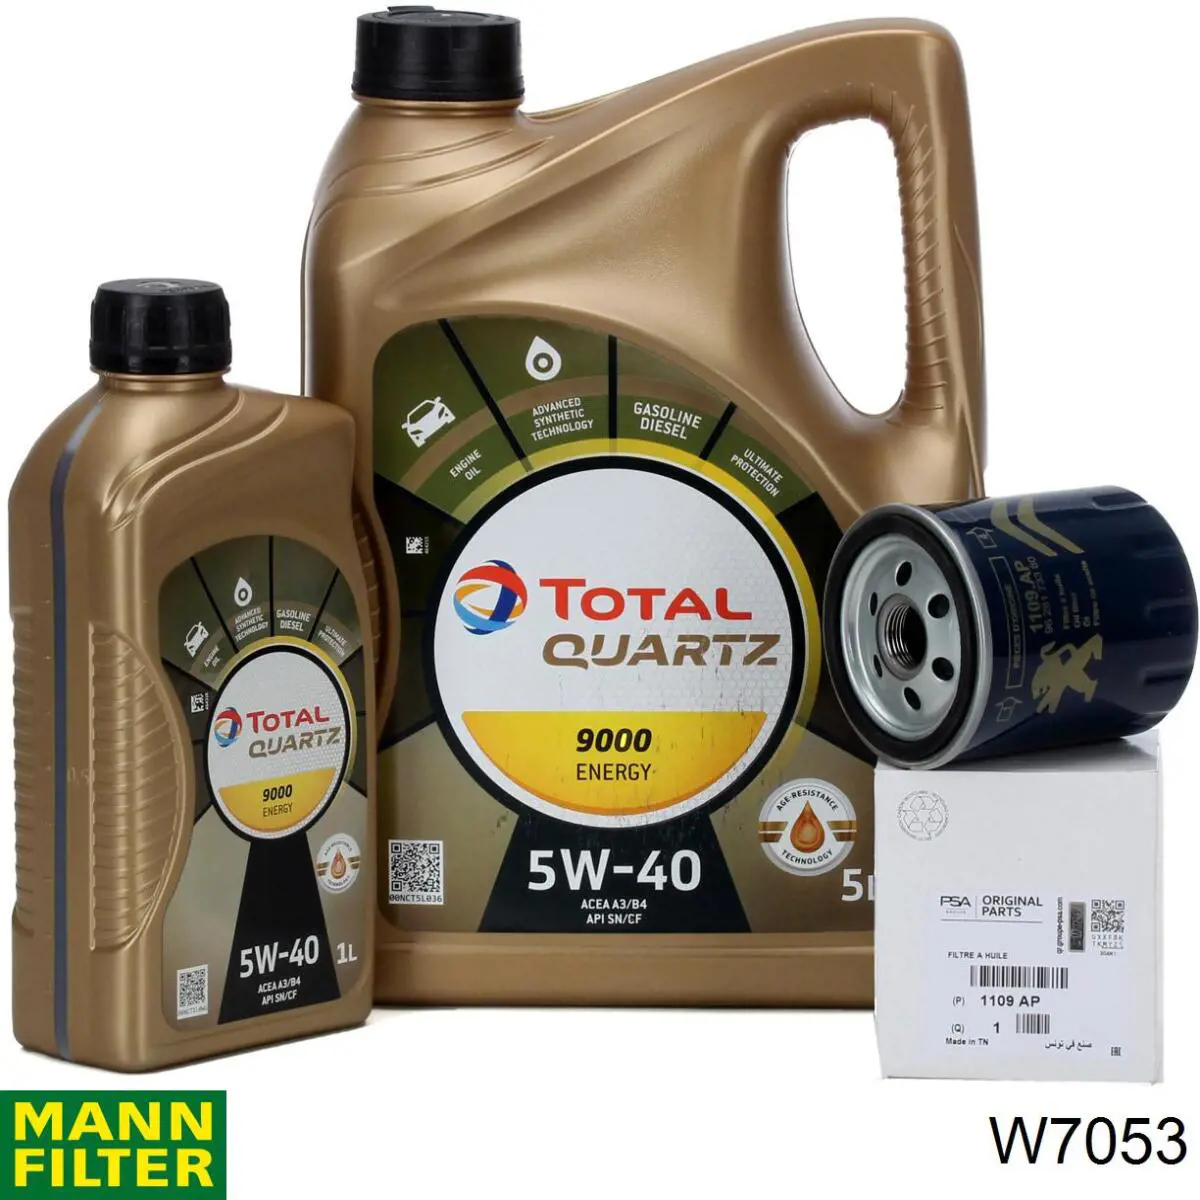 Filtro de aceite W7053 Mann-Filter